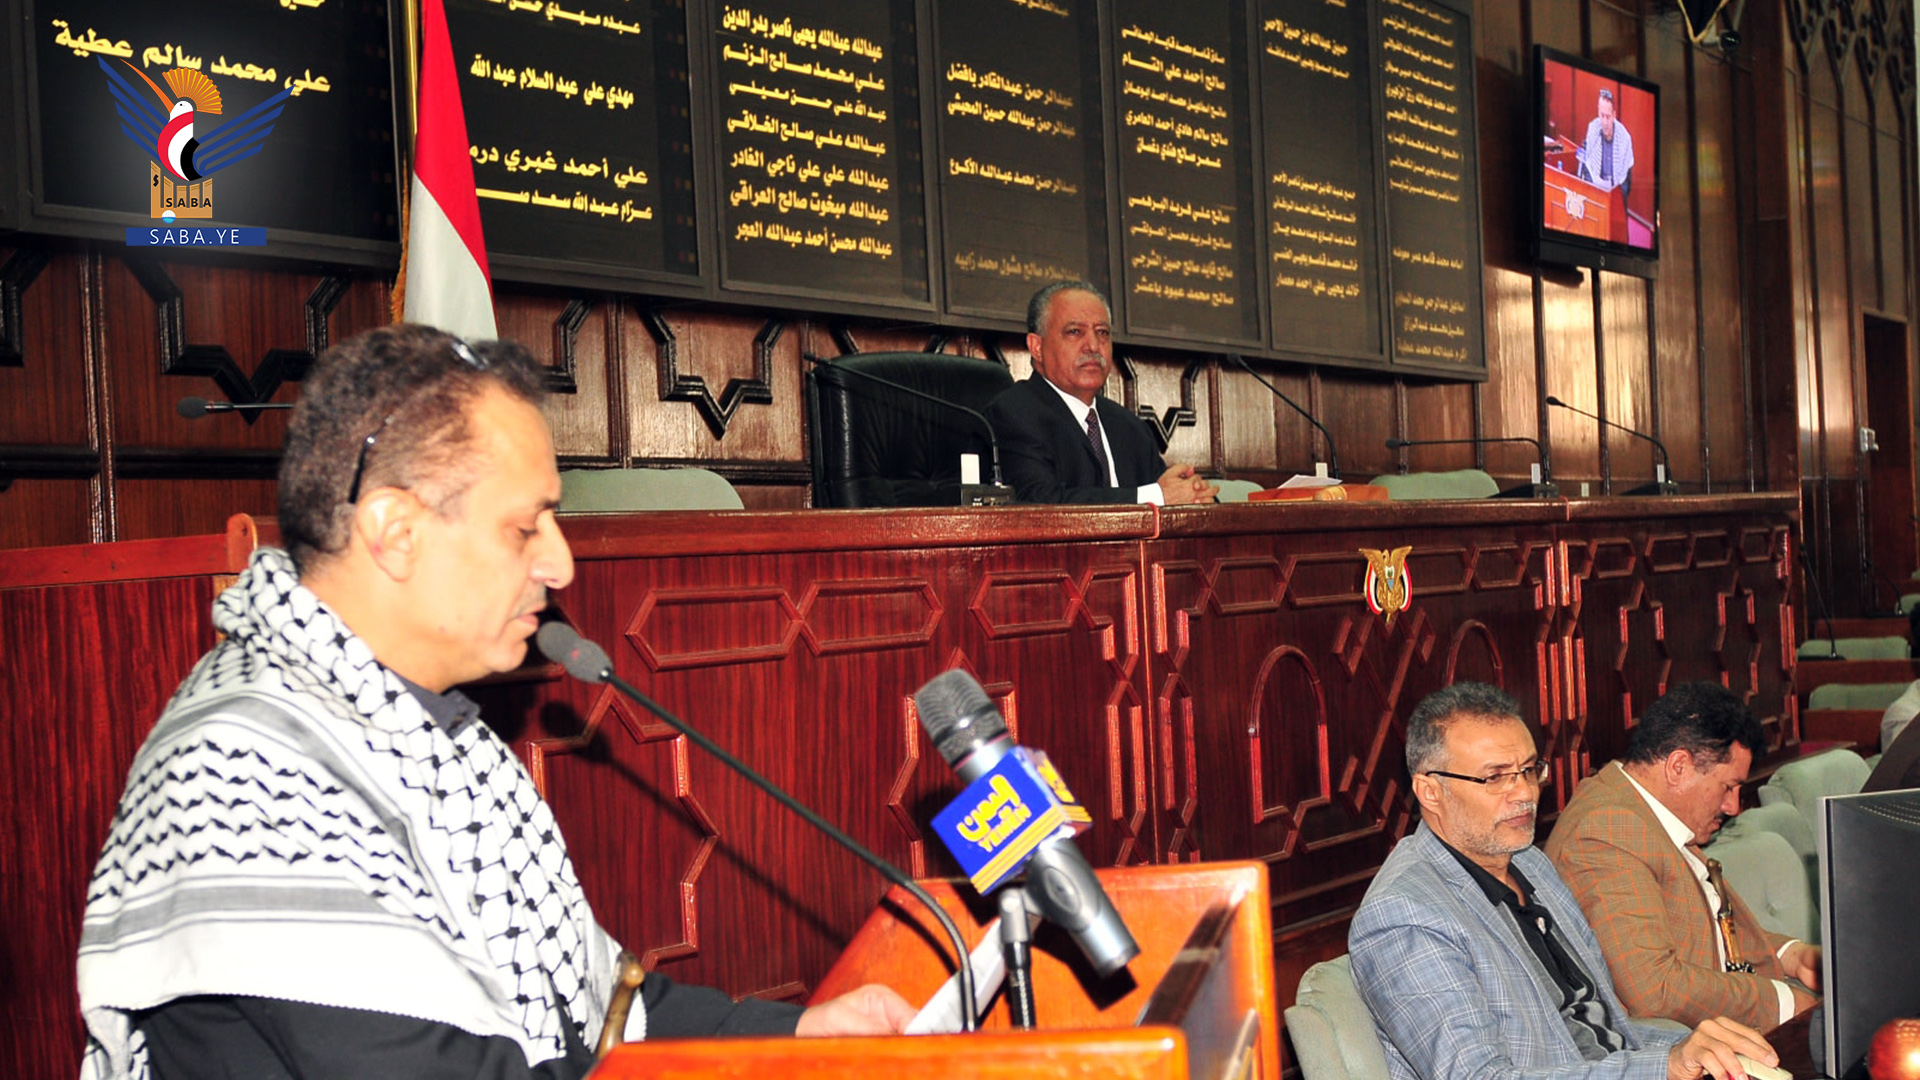 Parlament schätzt Positionen freier Menschen in der Welt, die sich für das jemenitische Volk einsetzen